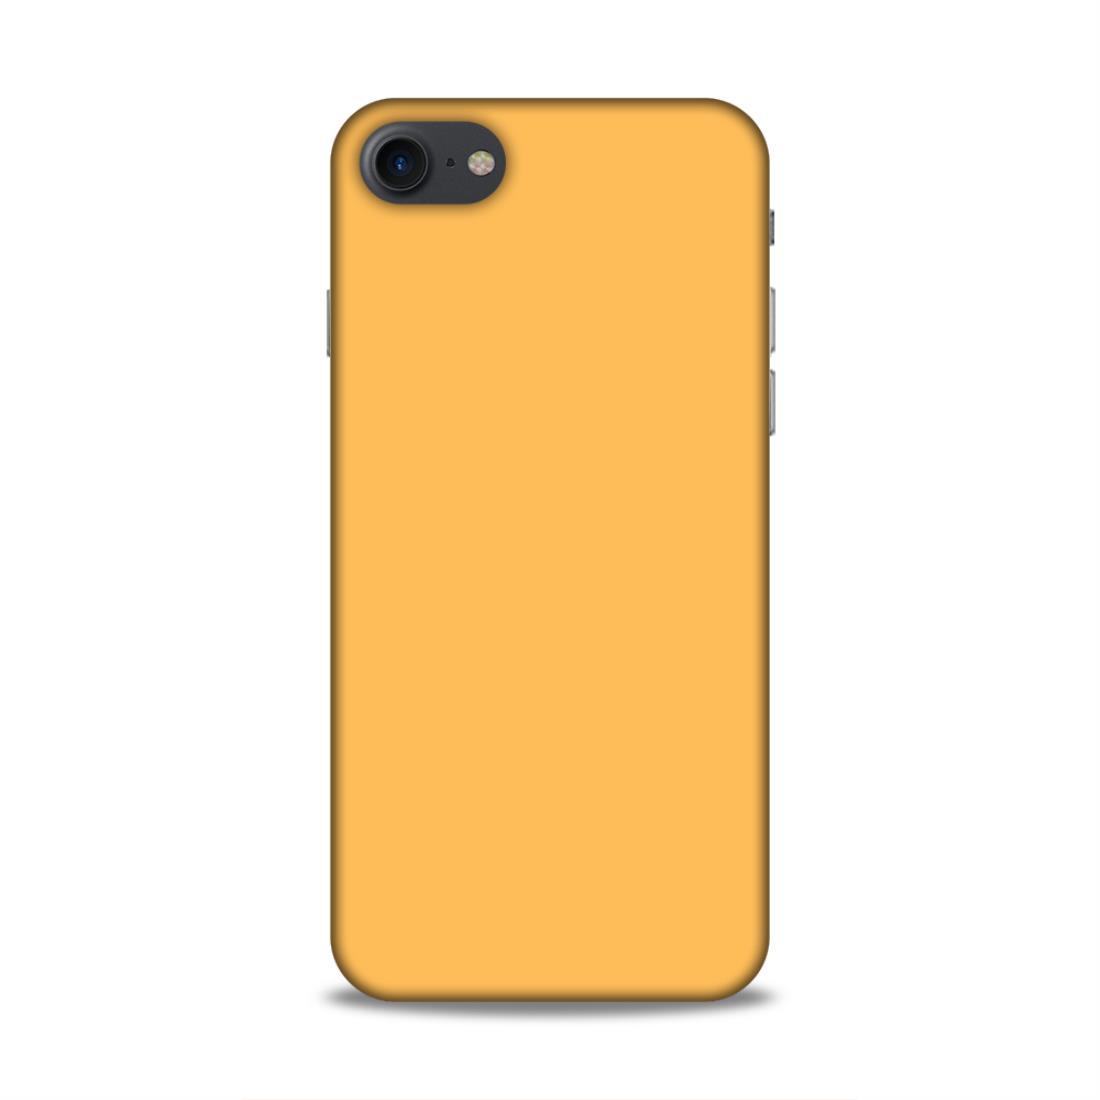 Peach Classic Plain iPhone 7 Phone Cover Case